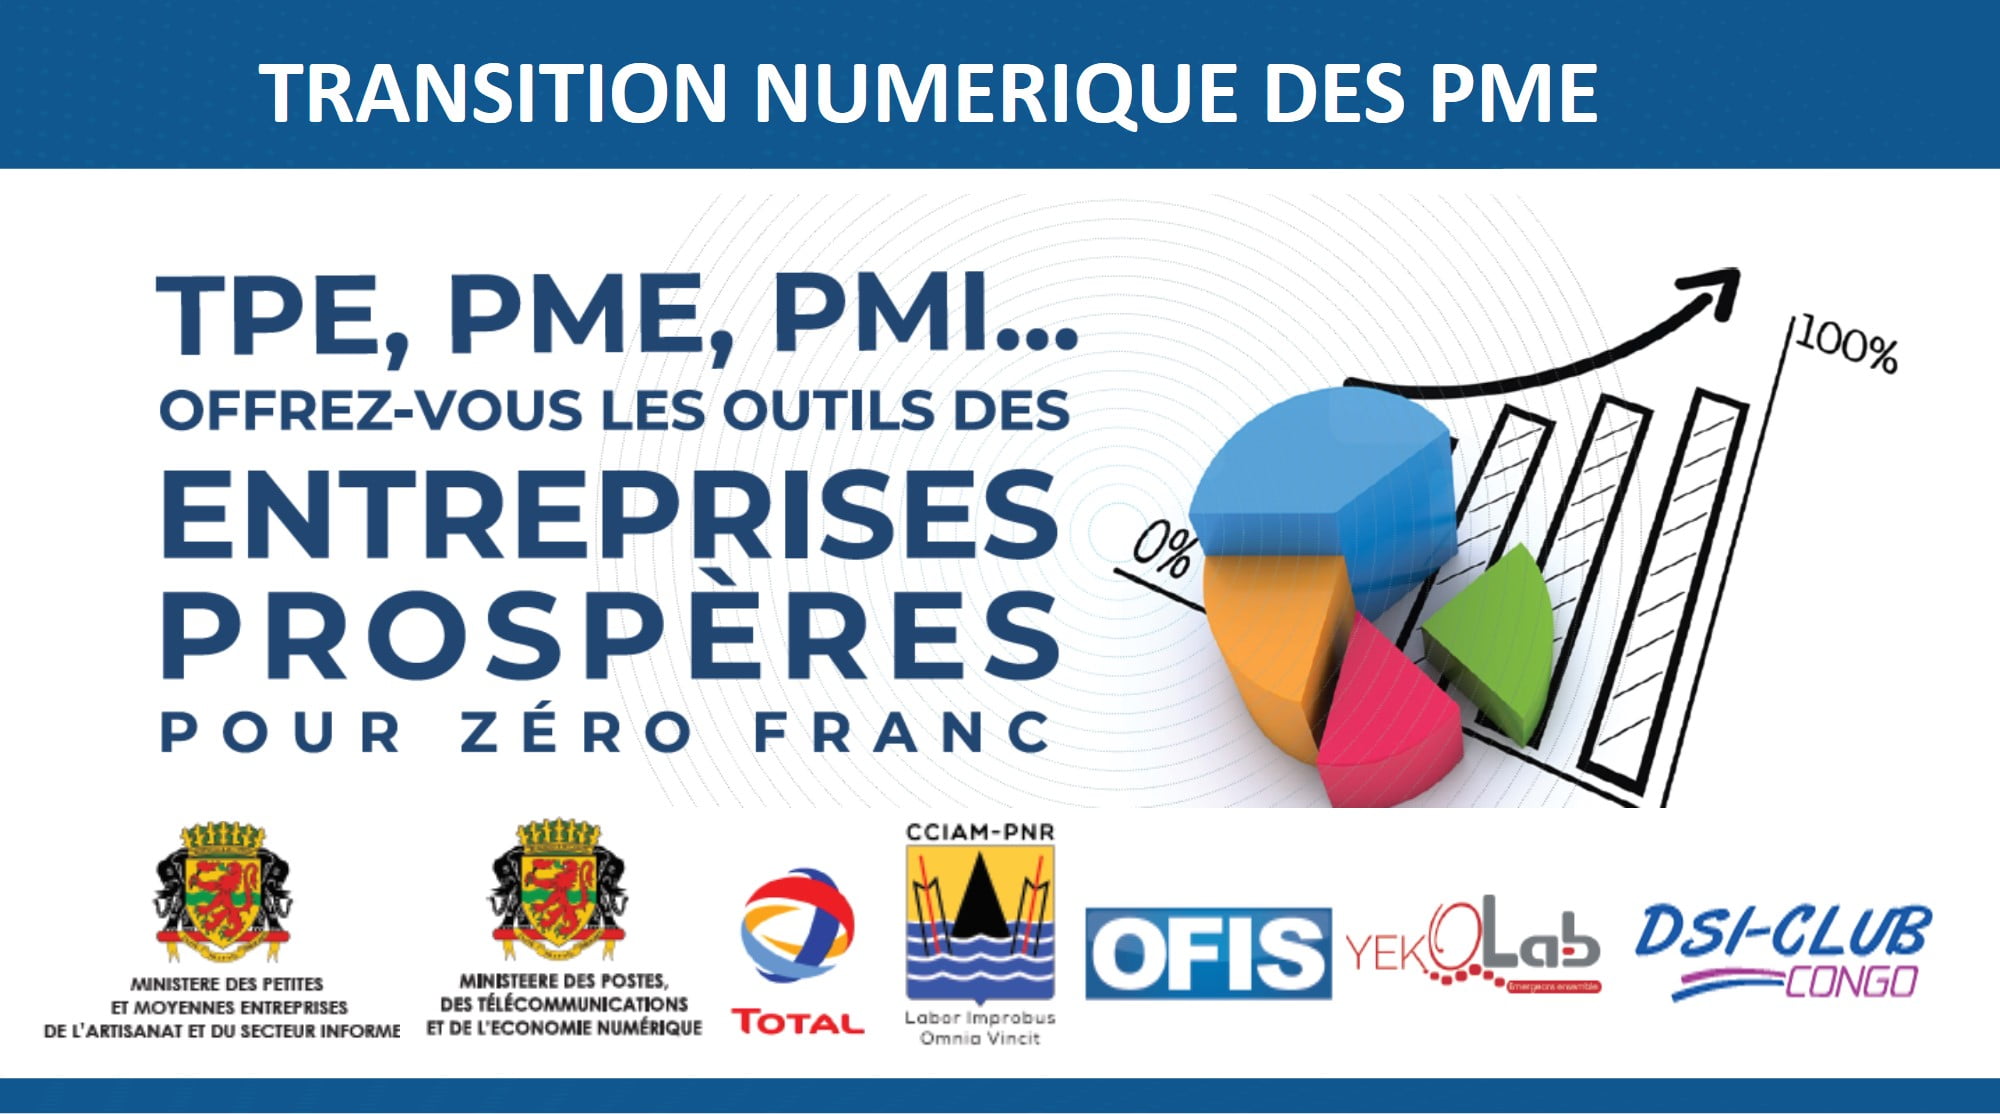 Où en sommes-nous du projet de transition numérique des PME congolaises, en janvier 2020 ?